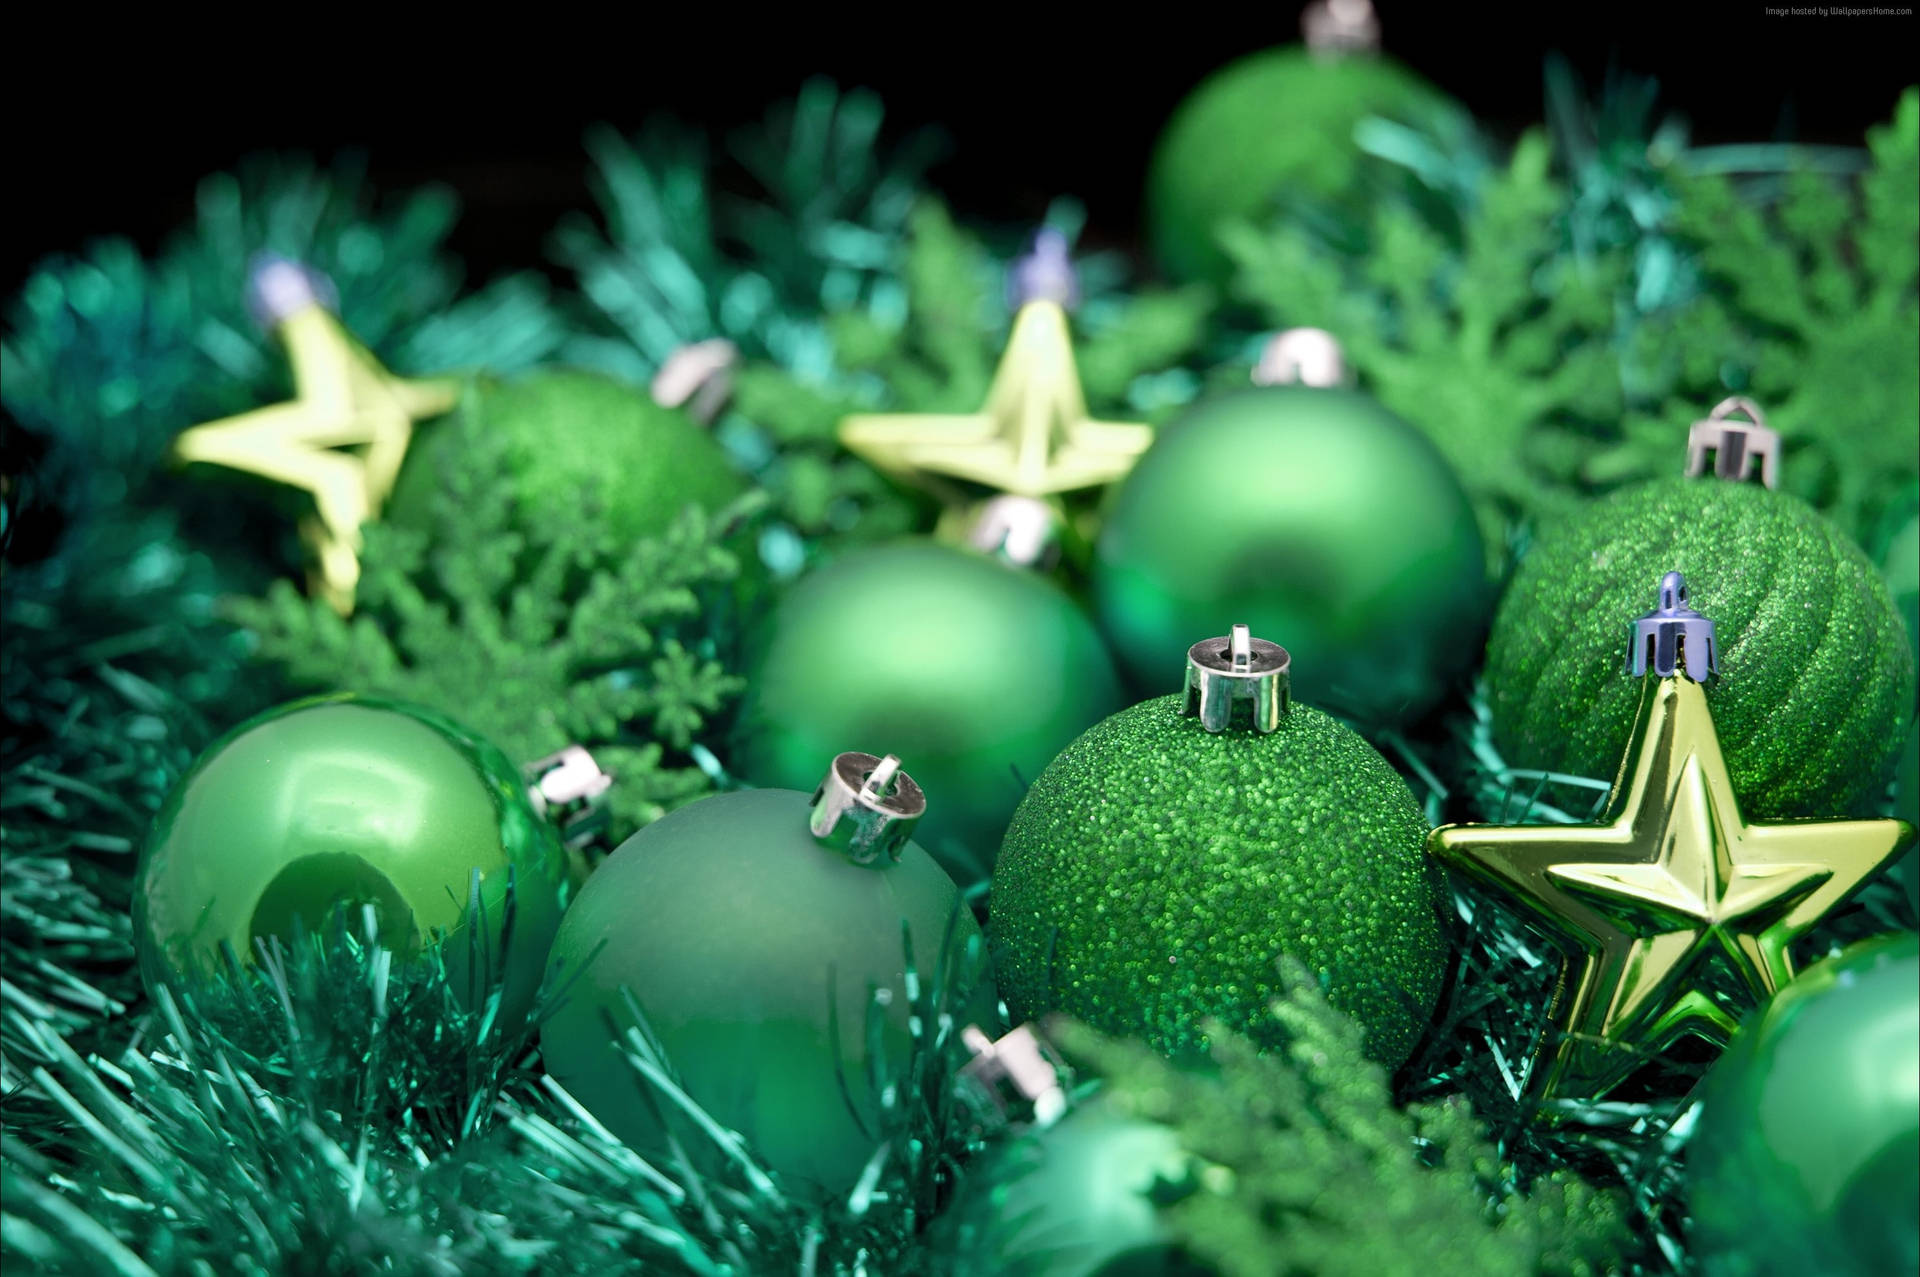 Green Christmas Balls With Stars